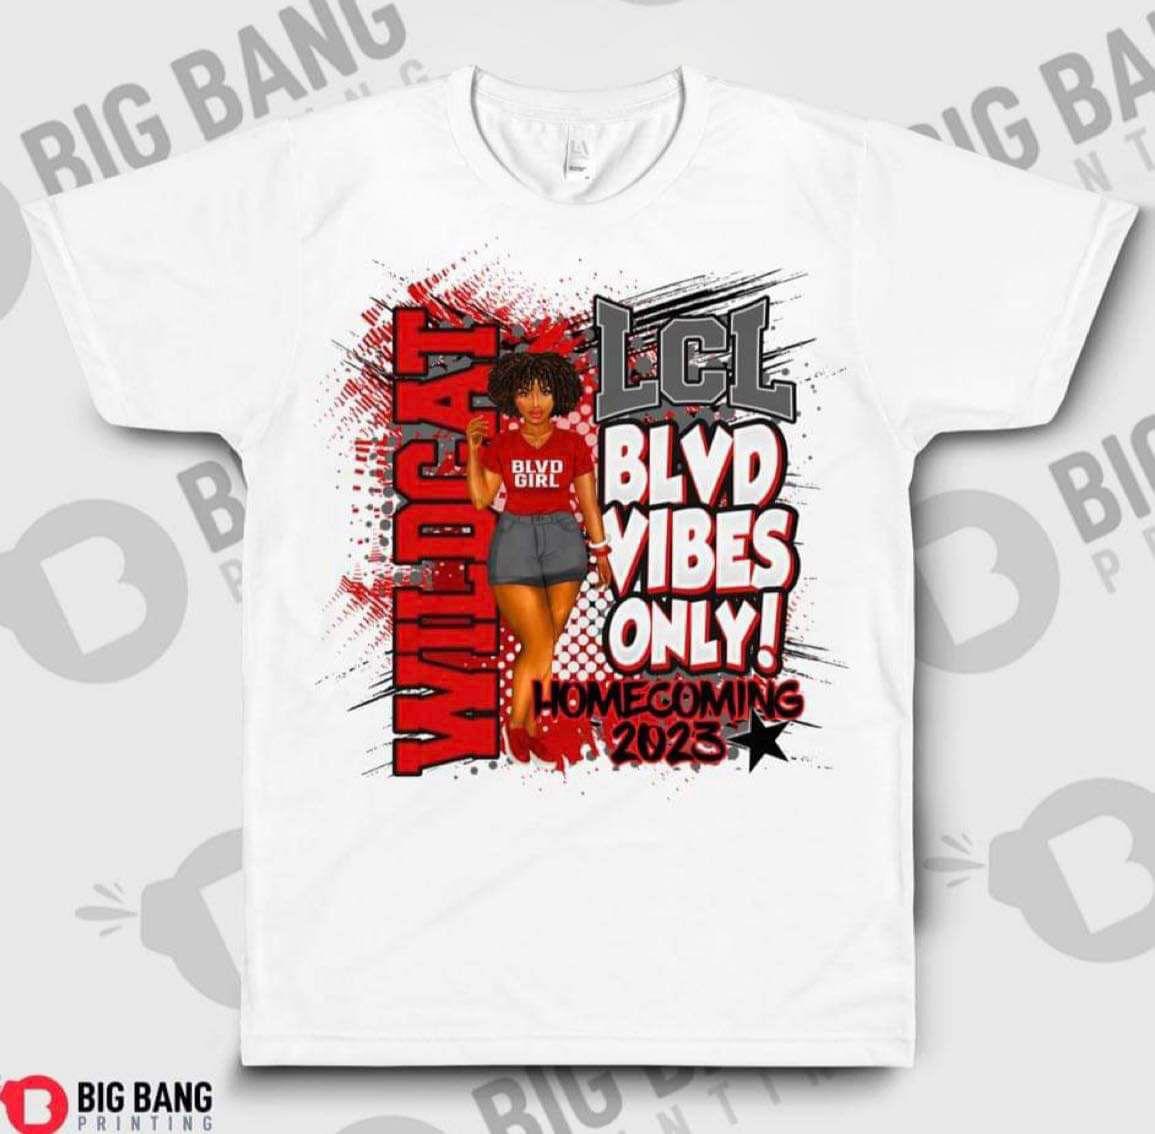 25-50 qty 4D shirt – Big Bang Printing